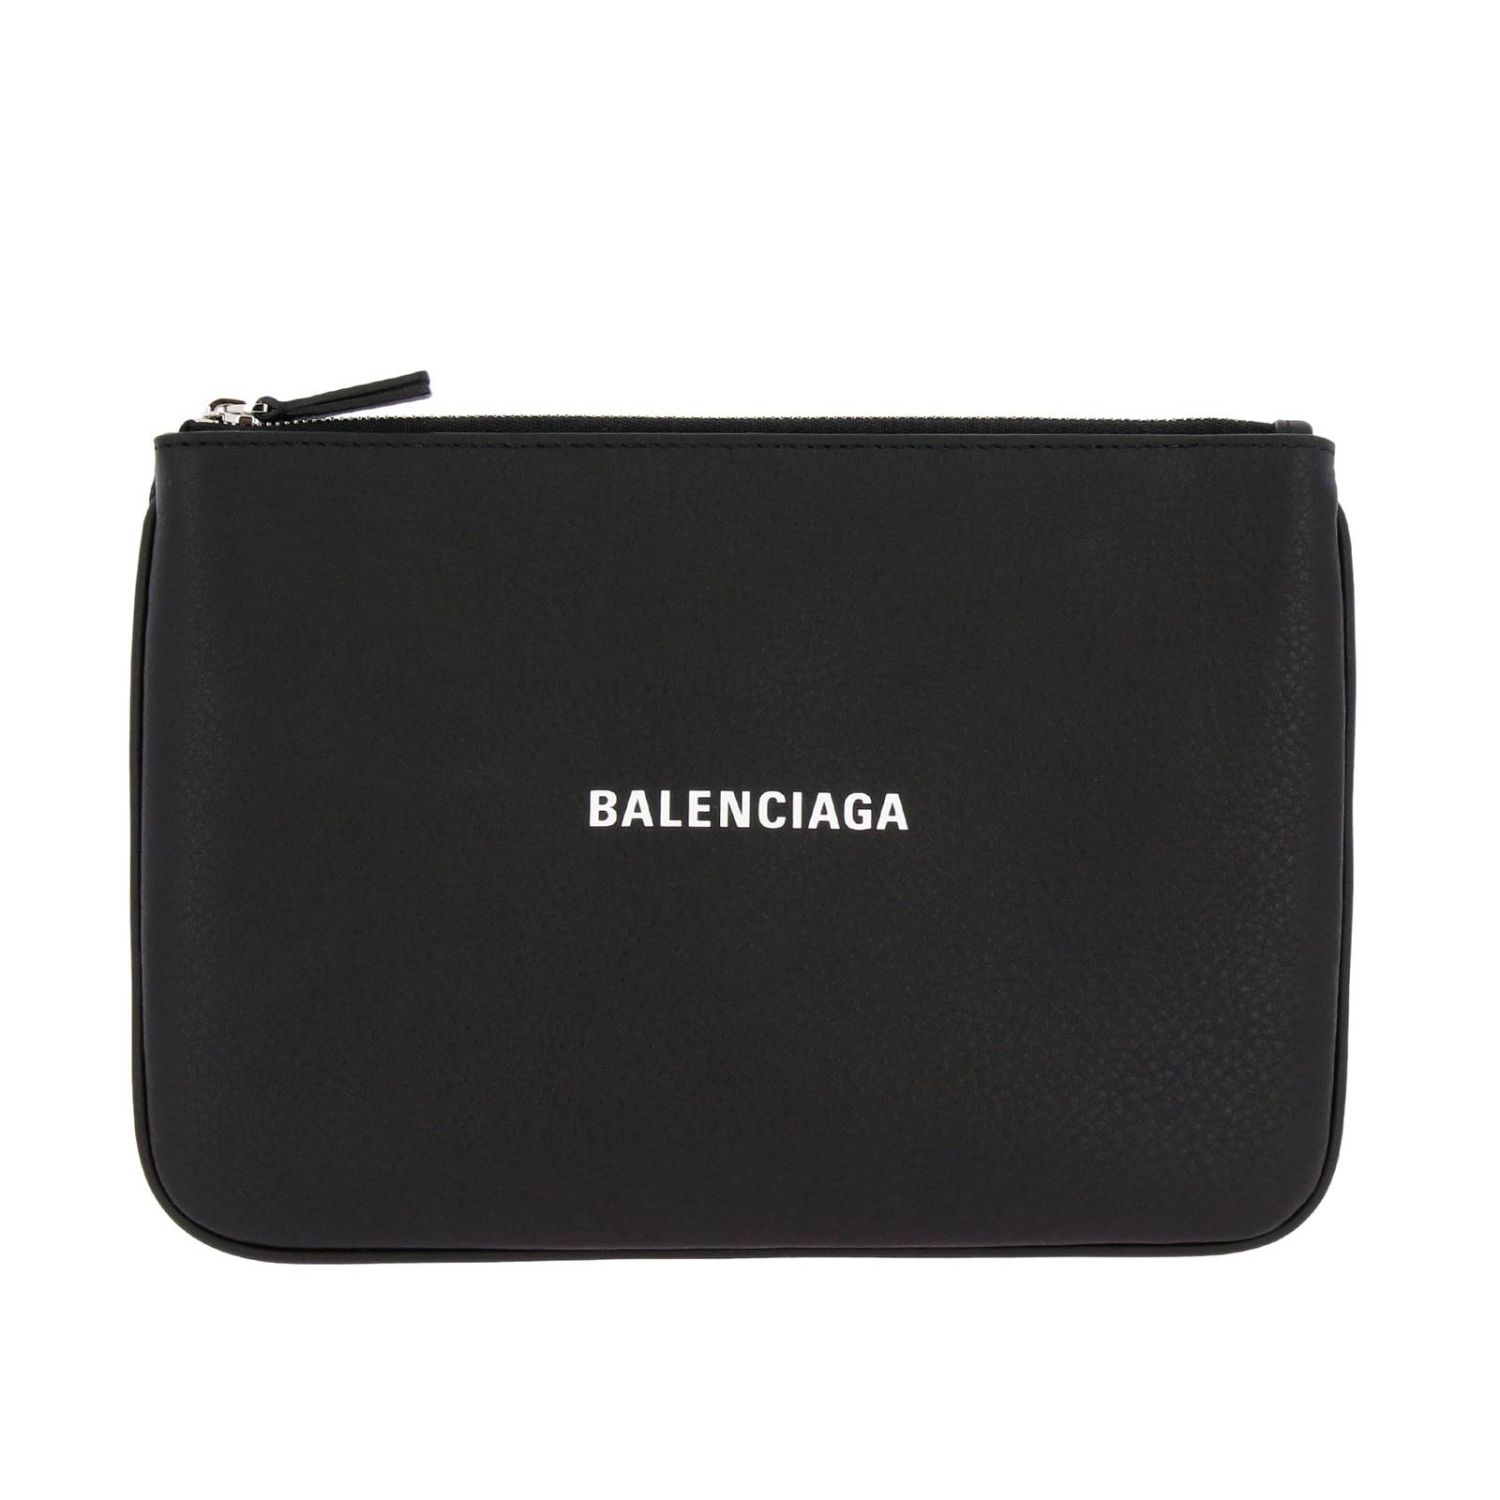 Balenciaga Outlet: clutch for woman - Black | Balenciaga clutch 551992 ...